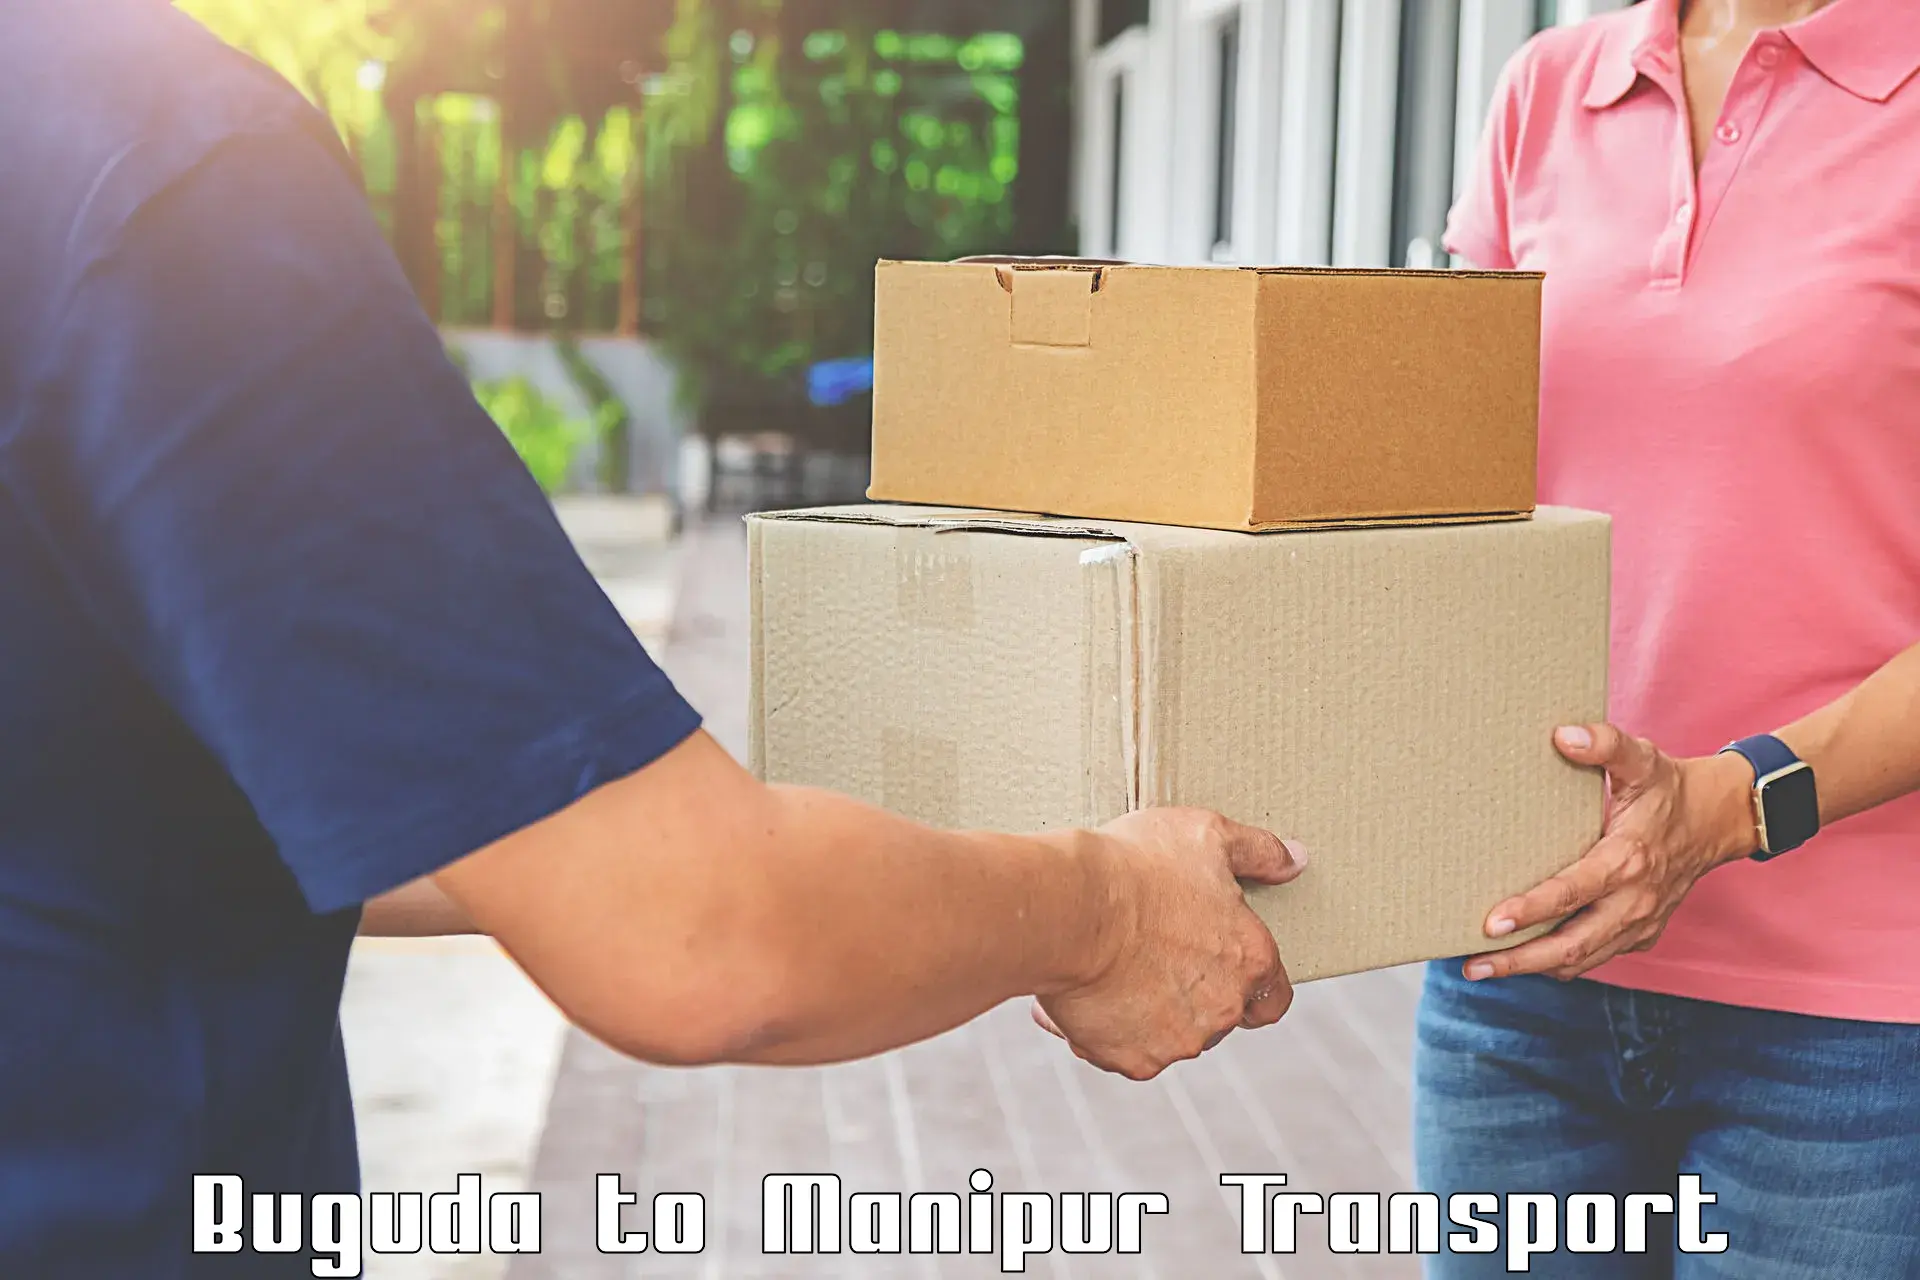 Two wheeler parcel service in Buguda to Kangpokpi